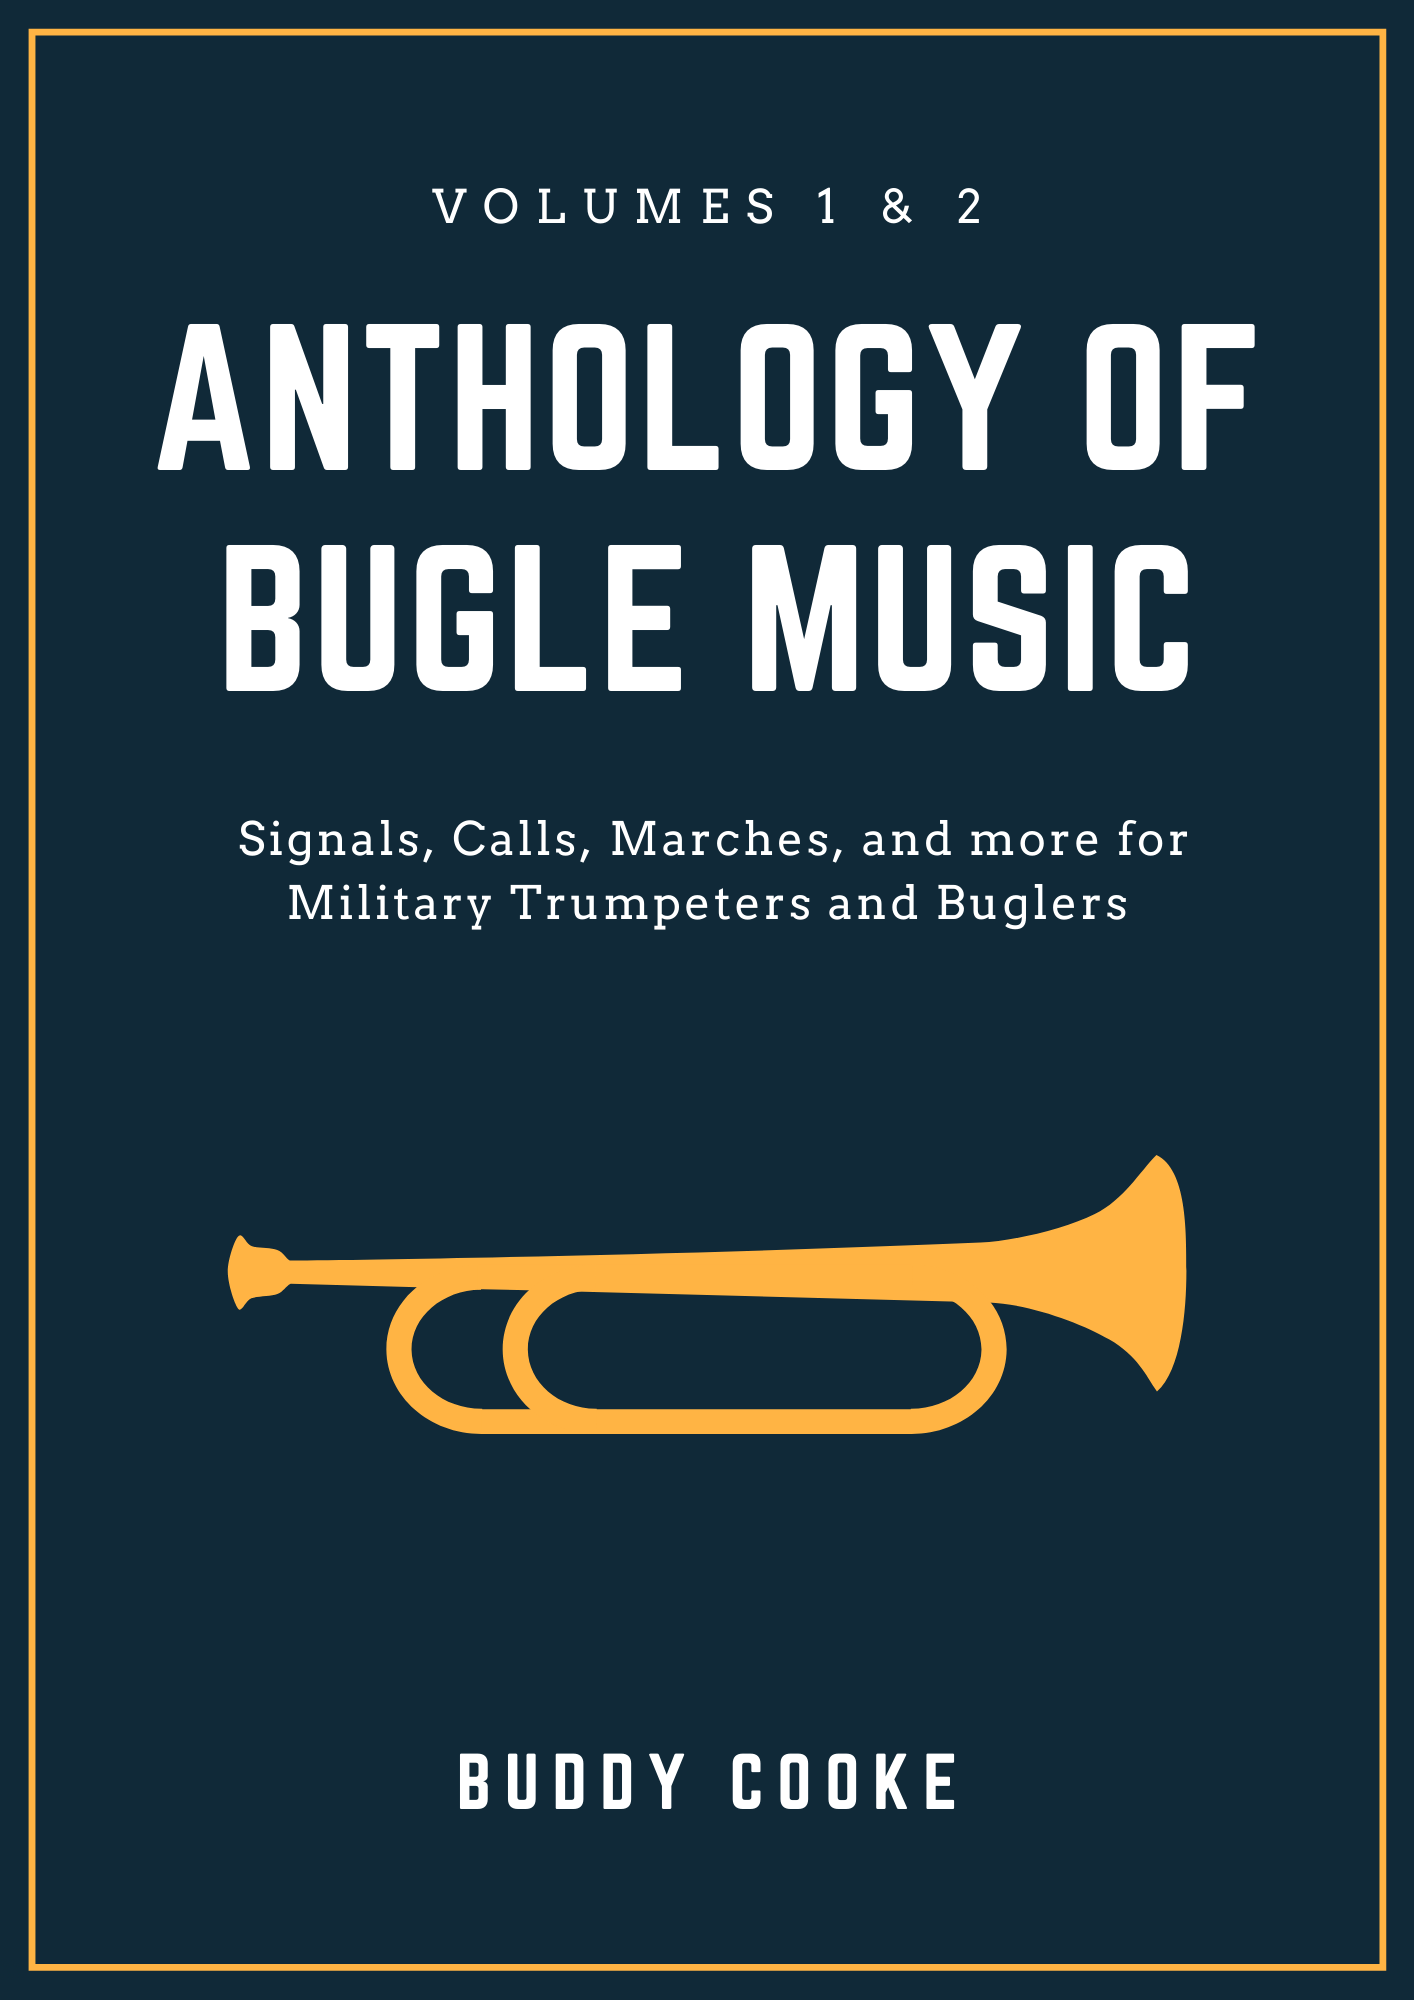 Anthology of Bugle Music – The Duty Bugler